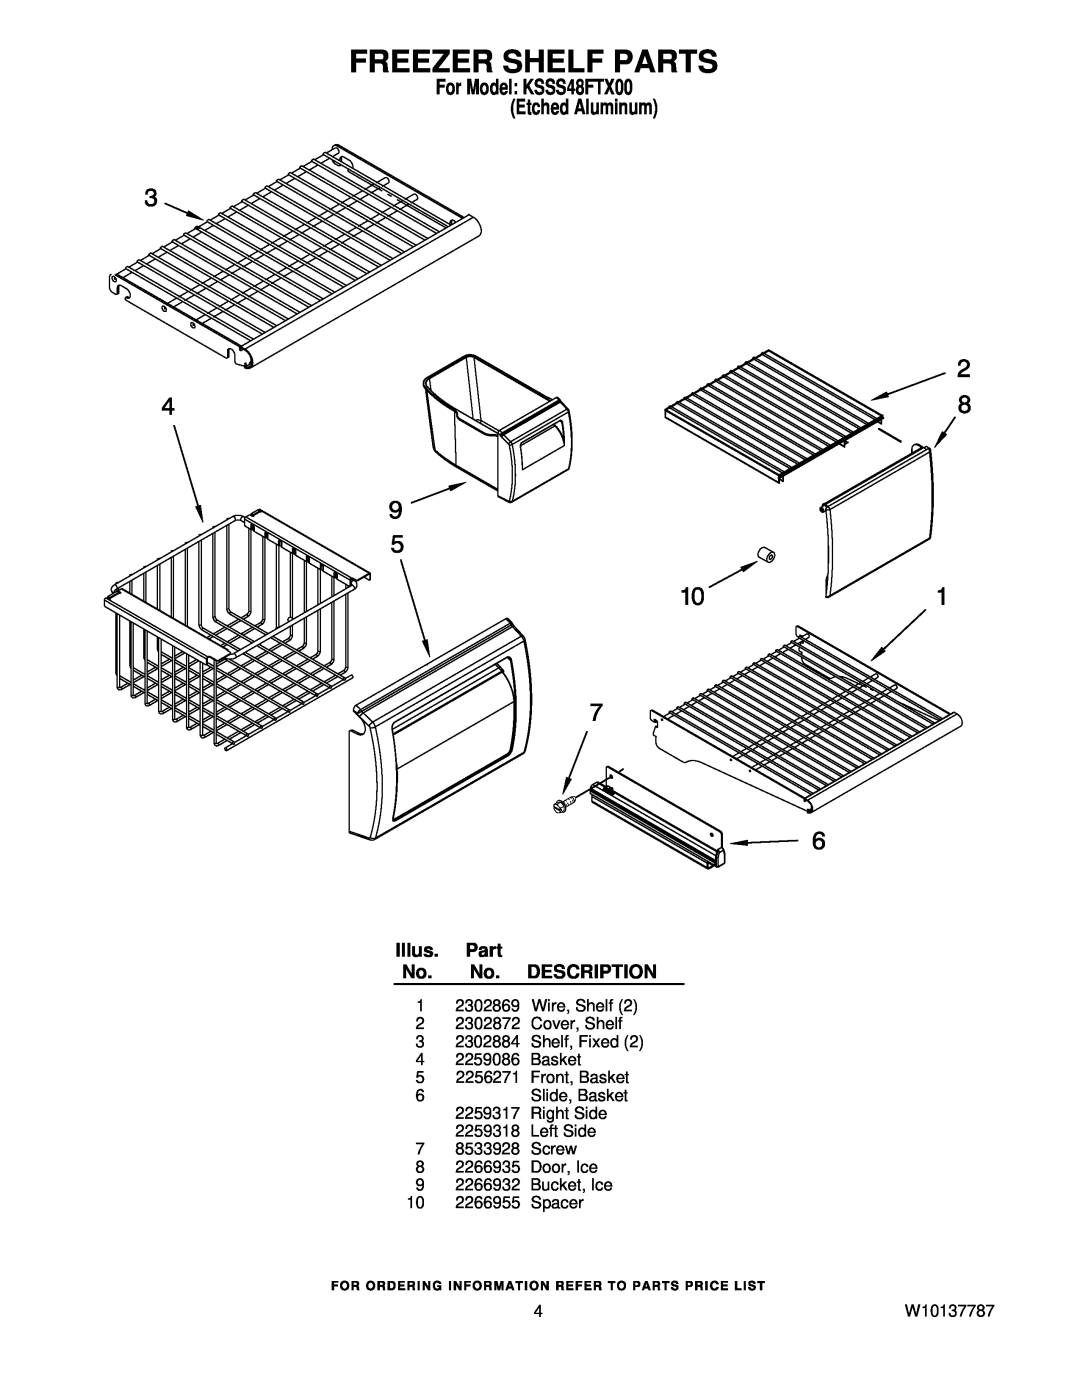 KitchenAid manual Freezer Shelf Parts, For Model KSSS48FTX00 Etched Aluminum, Illus. Part No. No. DESCRIPTION, W10137787 